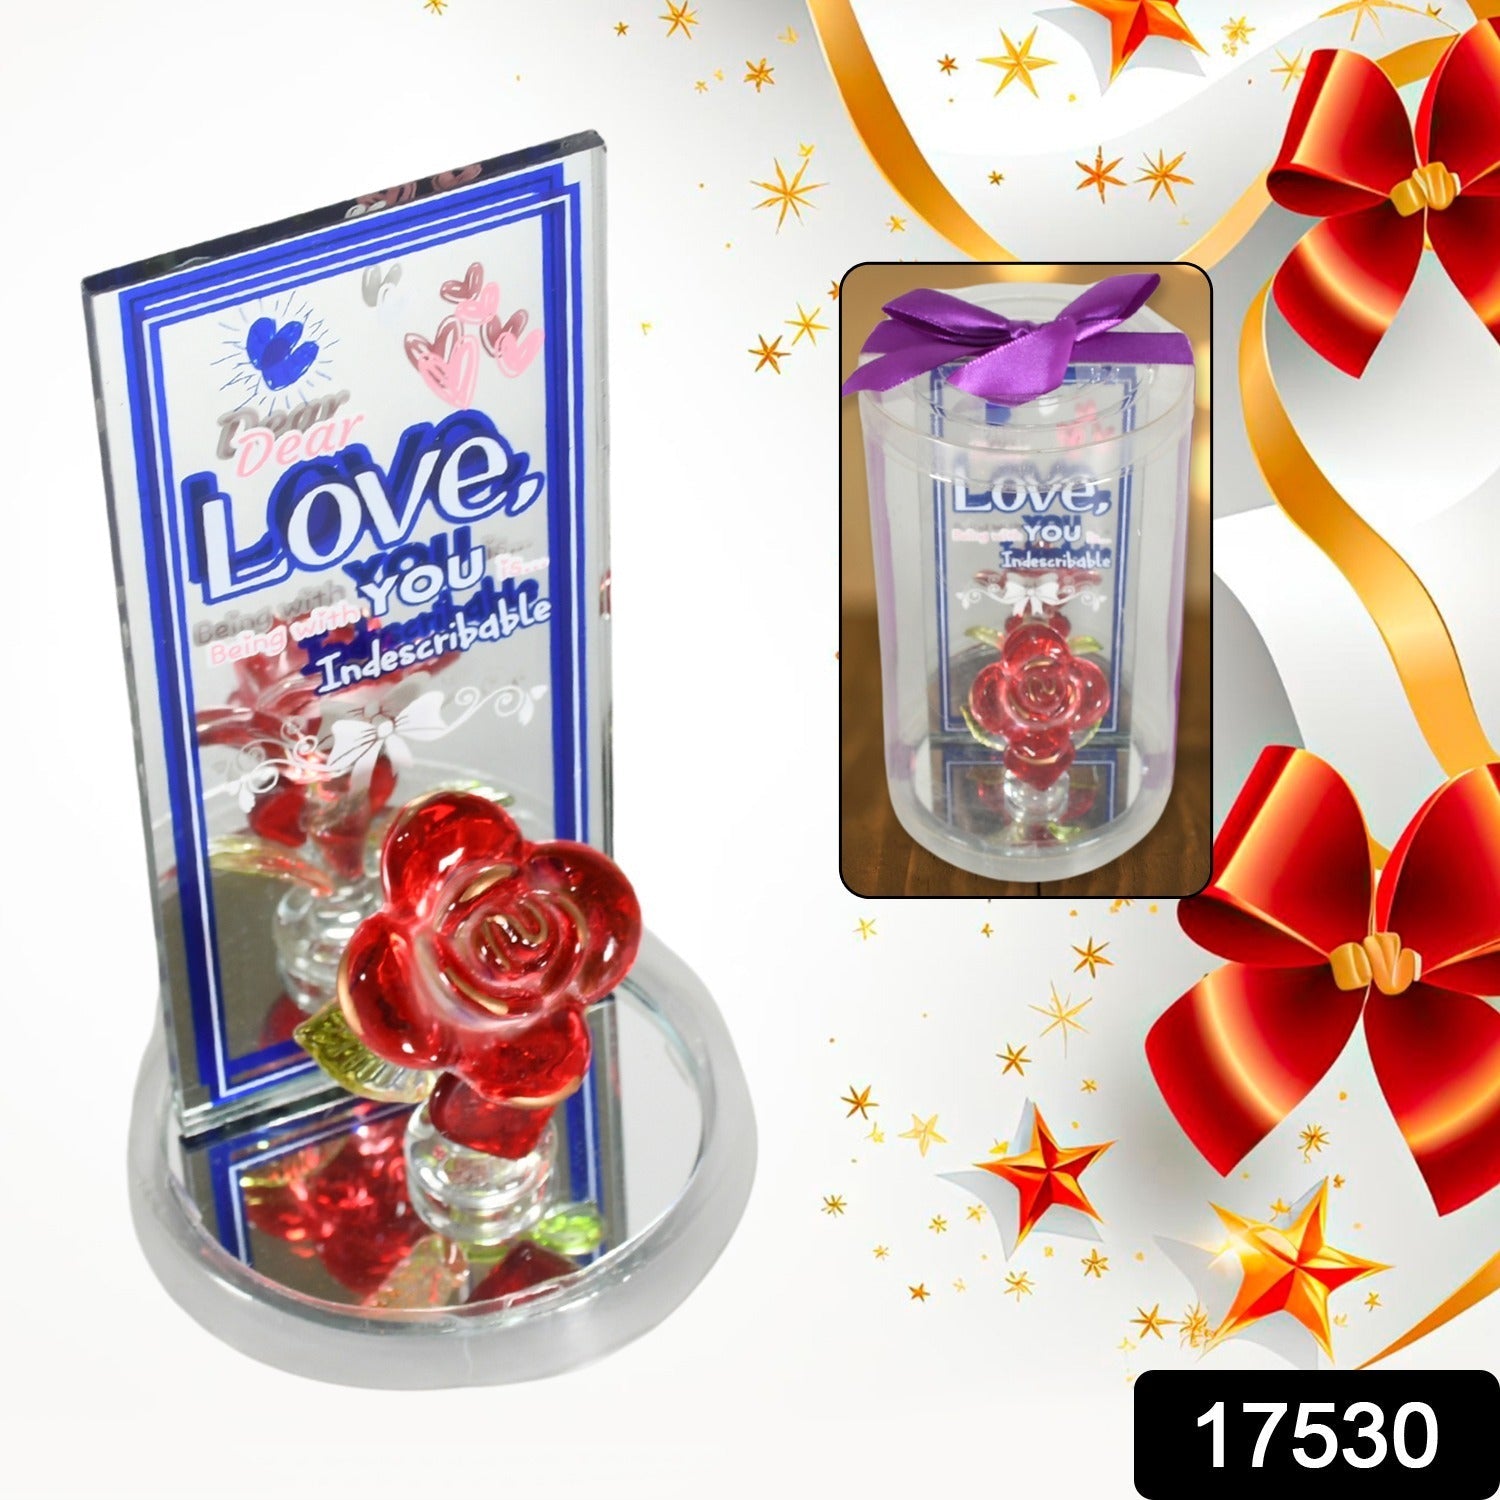 17530 Lovely Rose Gift Showpiece, Love showpiece Valentine's Day